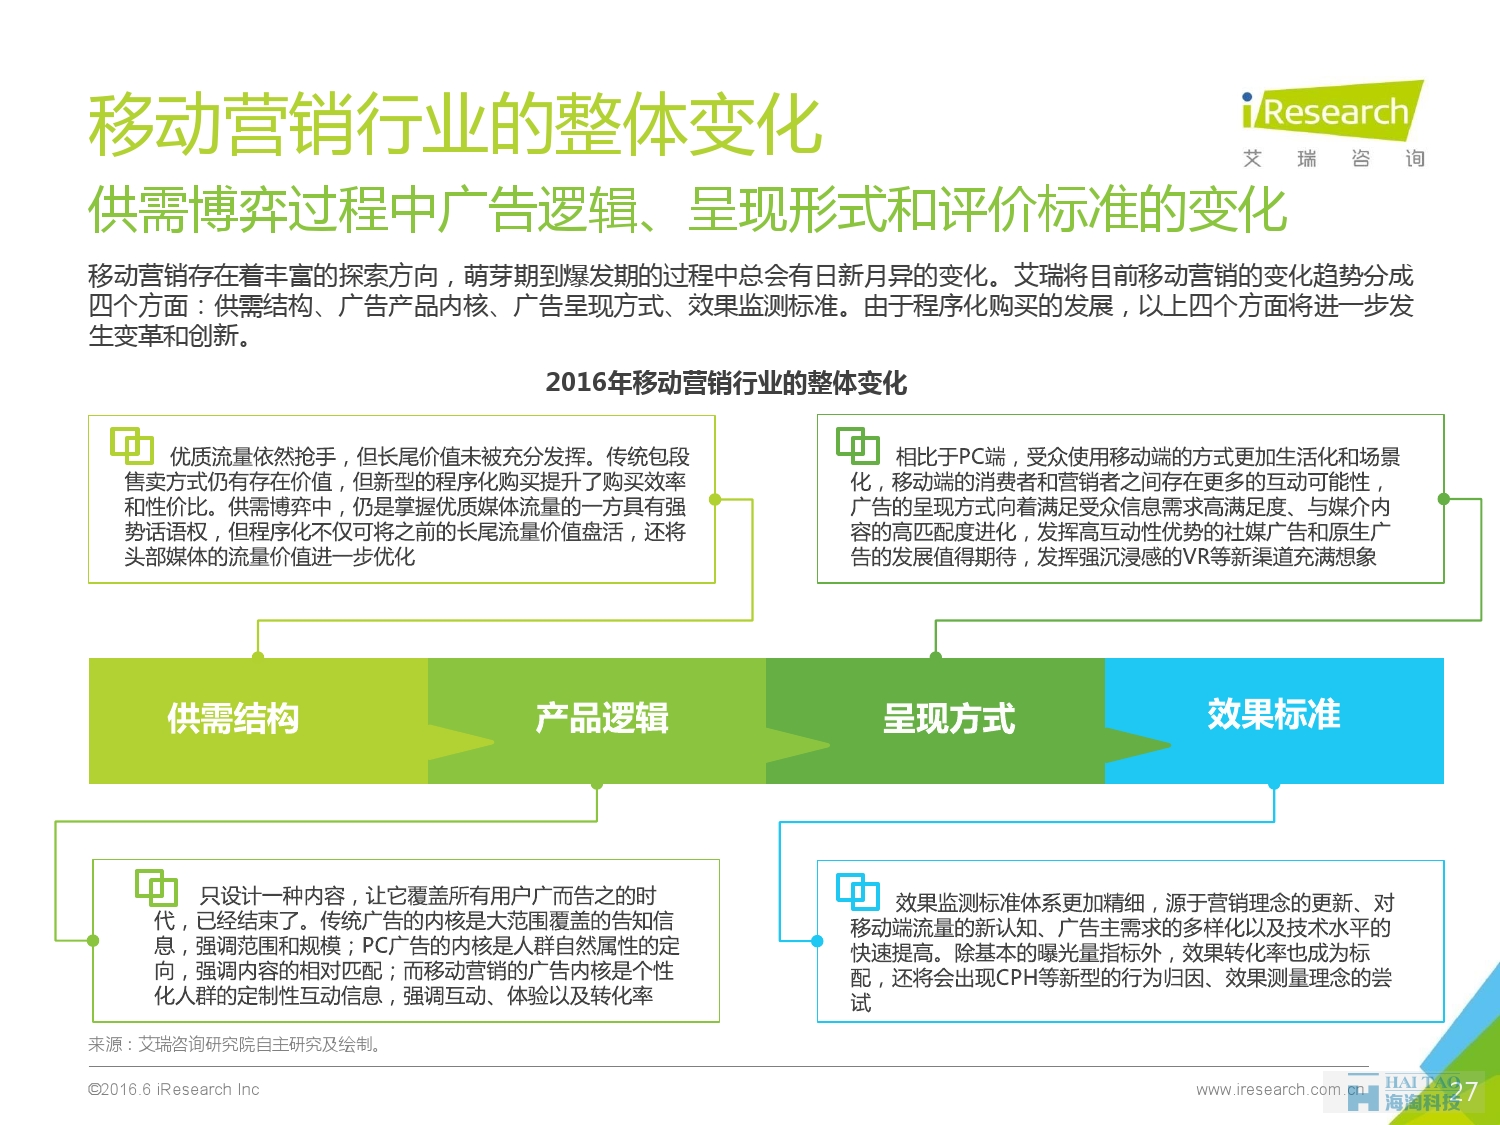 2016年中国移动营销行业研究报告——程序化时代篇_000027